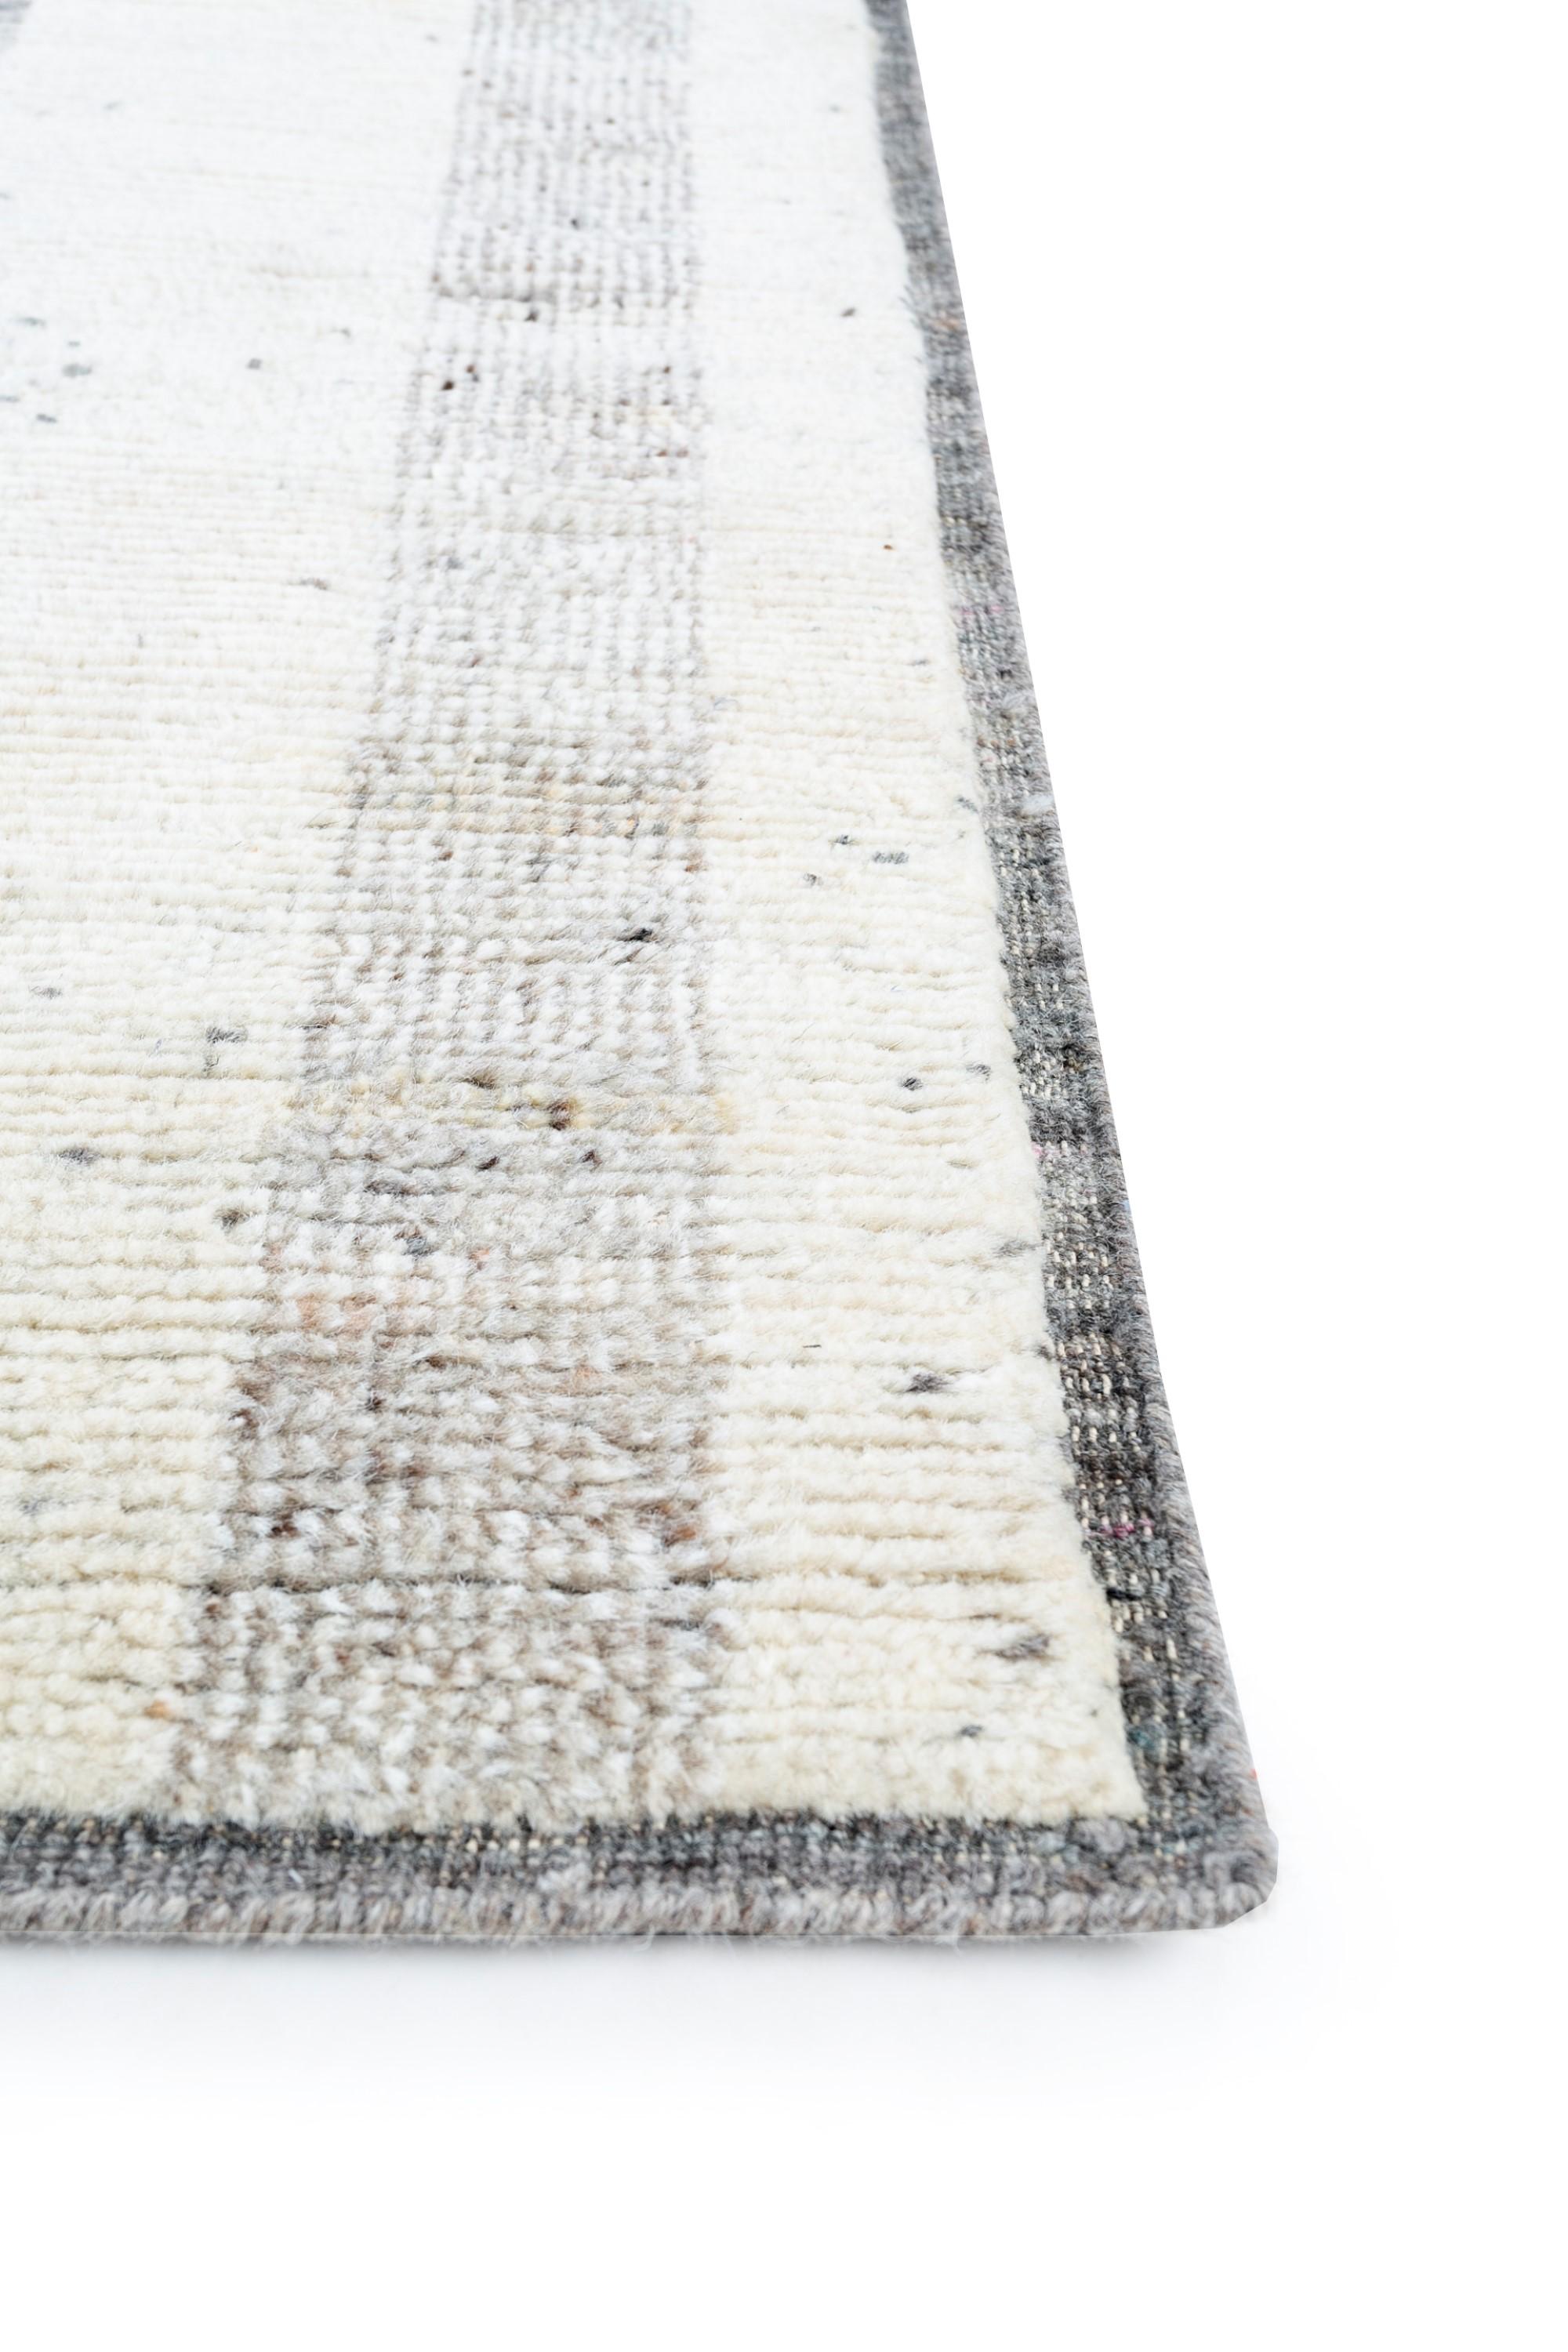 Dévoilez l'allure d'une douce élégance avec ce tapis en laine absolument magnifique de notre collection Manifest, reflétant un mélange harmonieux de précision linéaire et de charme abstrait. Le tapis présente un motif fascinant, où les lignes